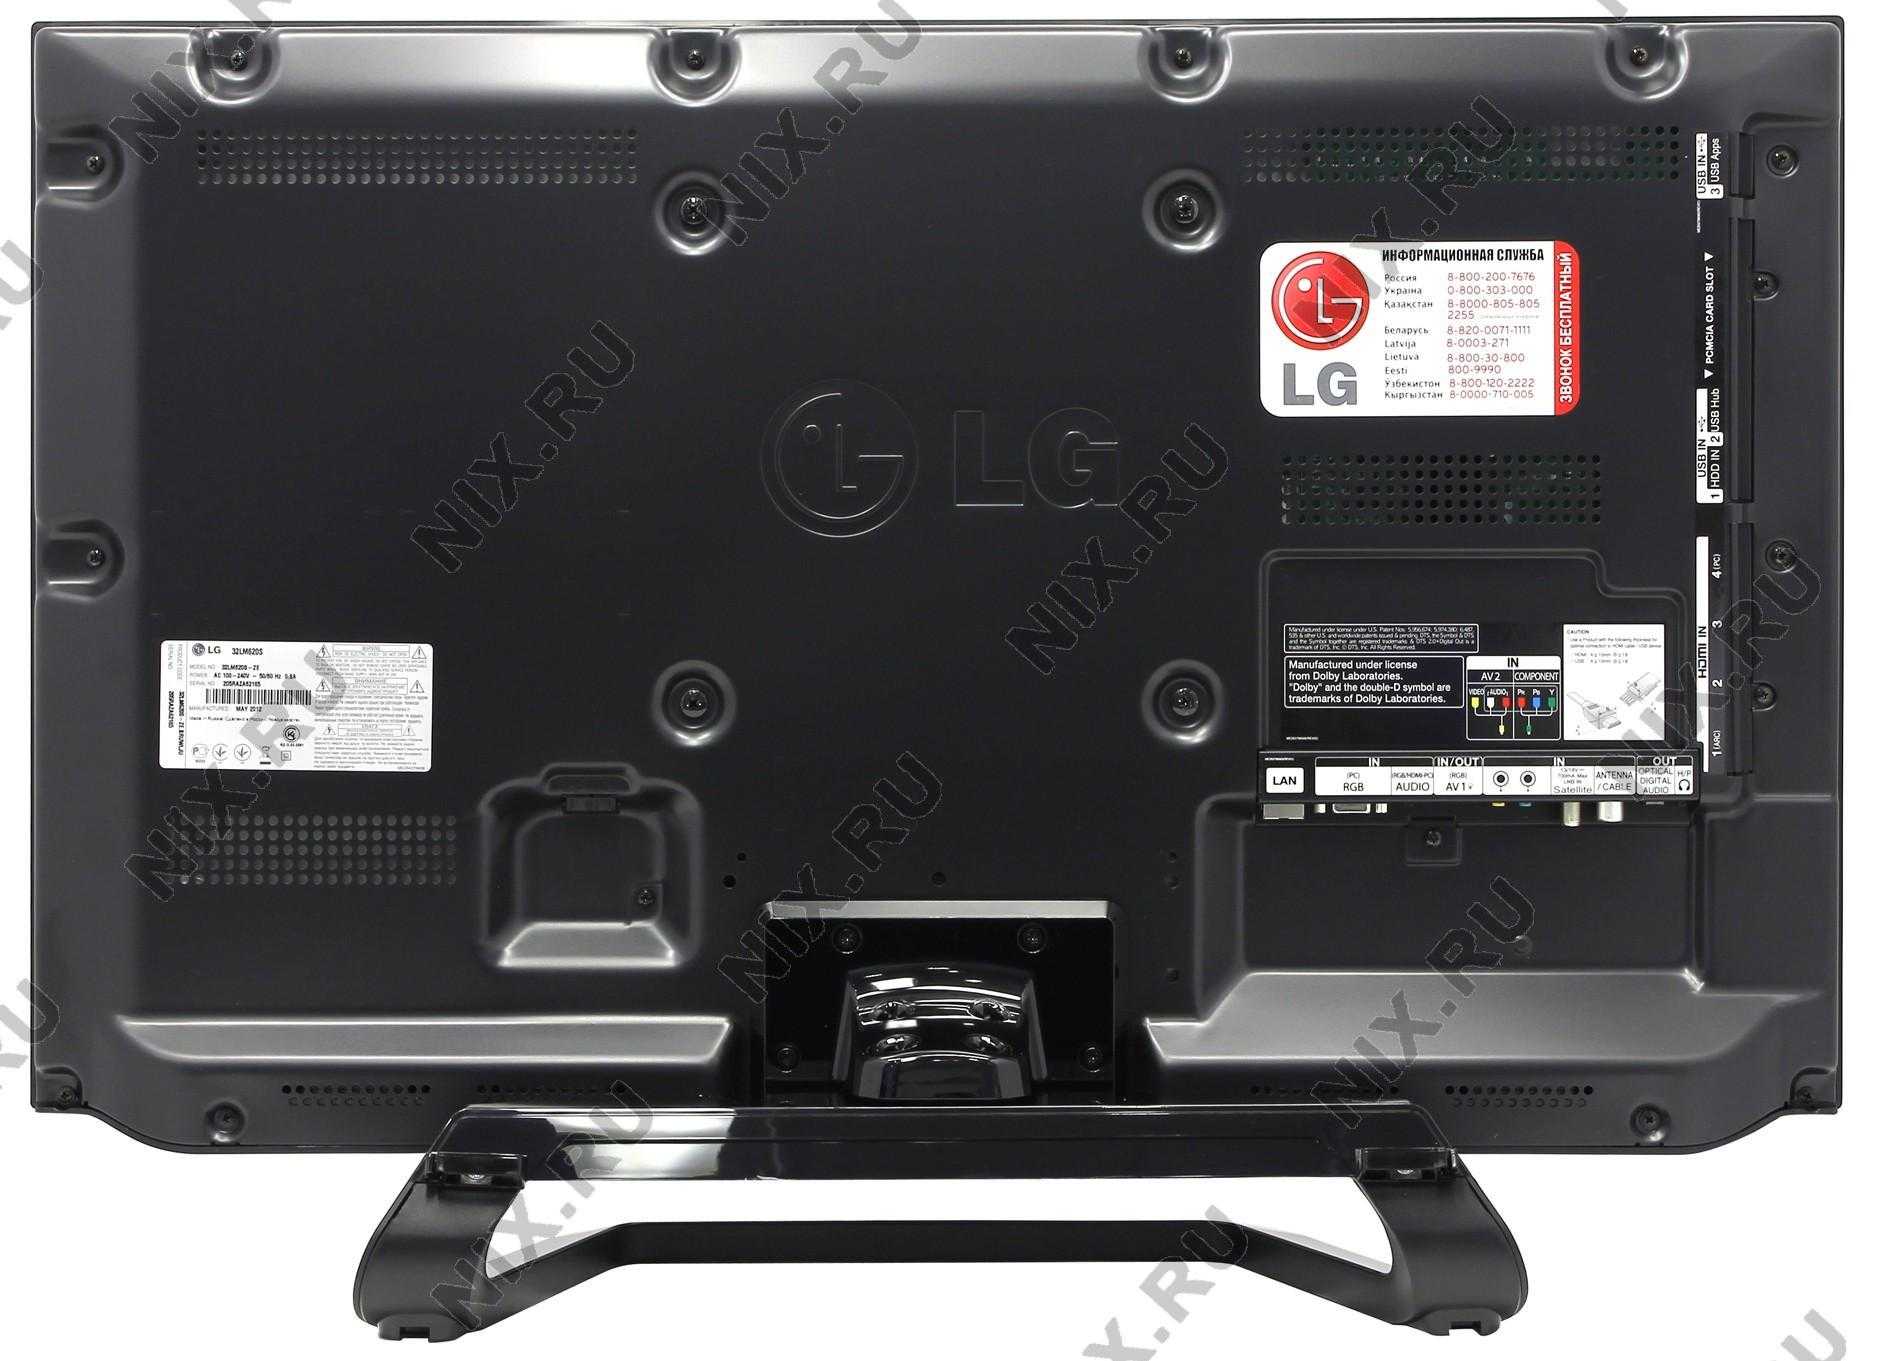 Телевизор LG 47LM620S - подробные характеристики обзоры видео фото Цены в интернет-магазинах где можно купить телевизор LG 47LM620S